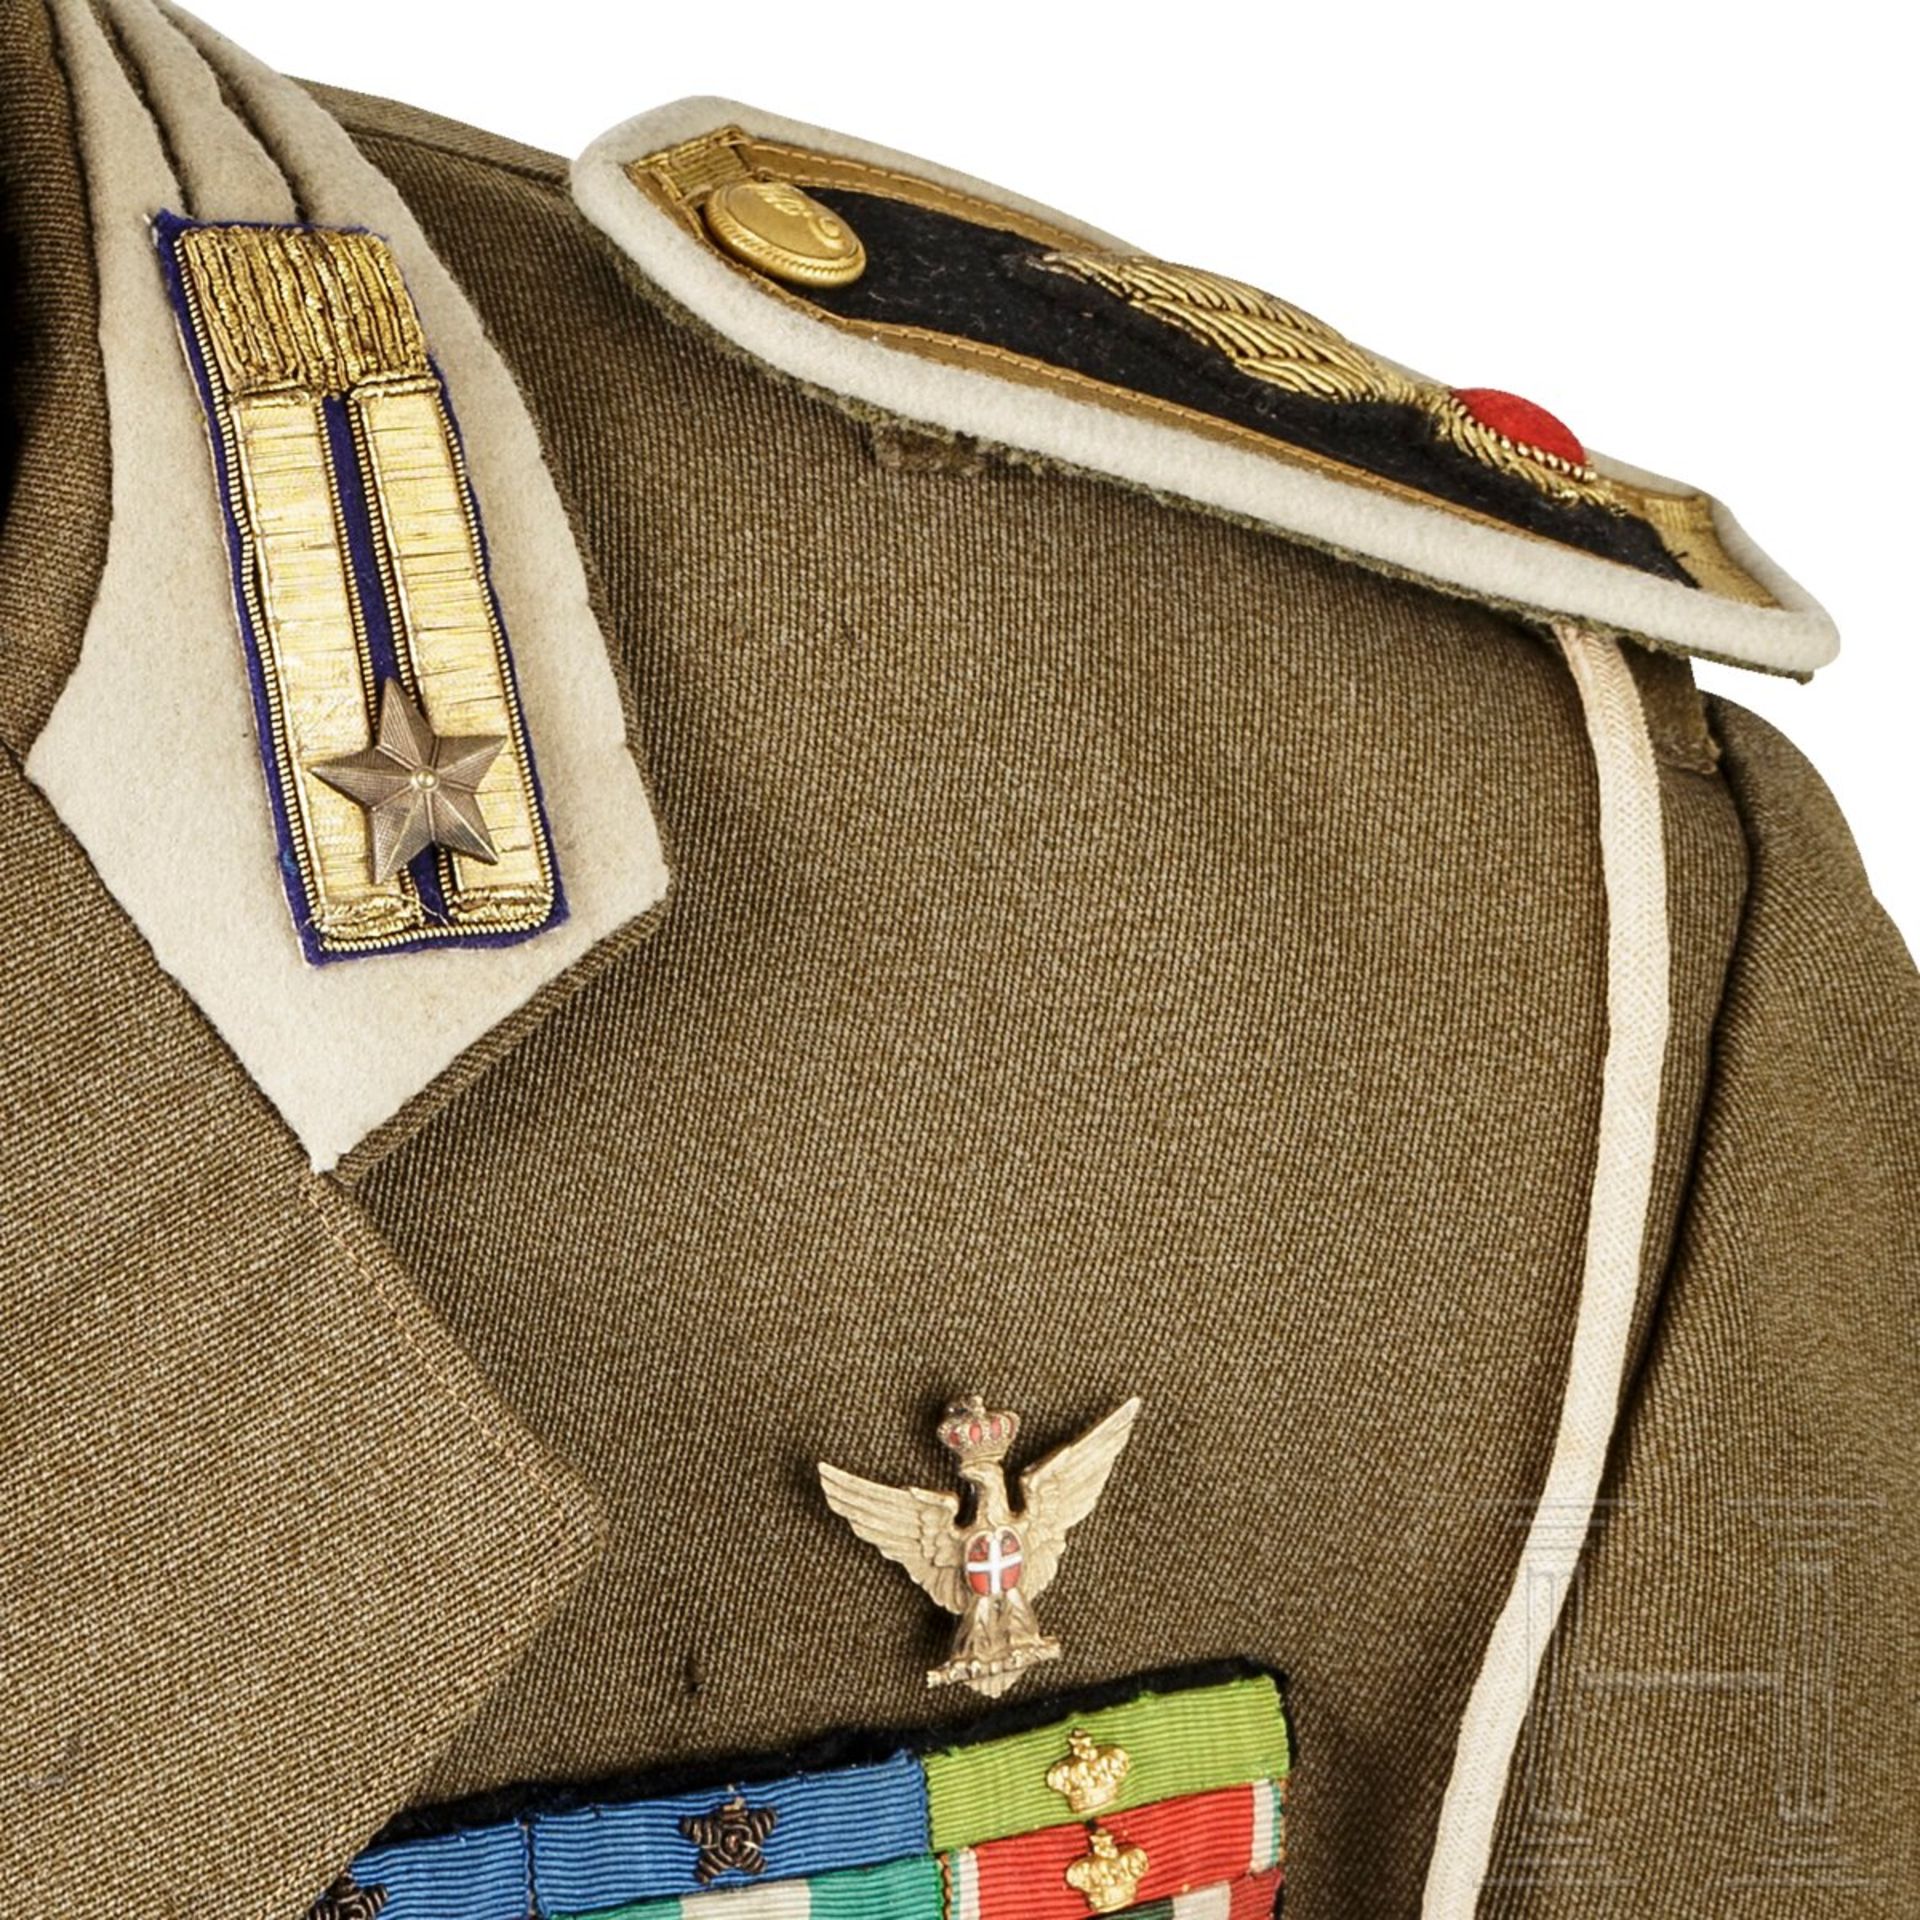 Tropenuniform für einen Stabsoffizier im Generalstab, 1930er Jahre - Image 8 of 10